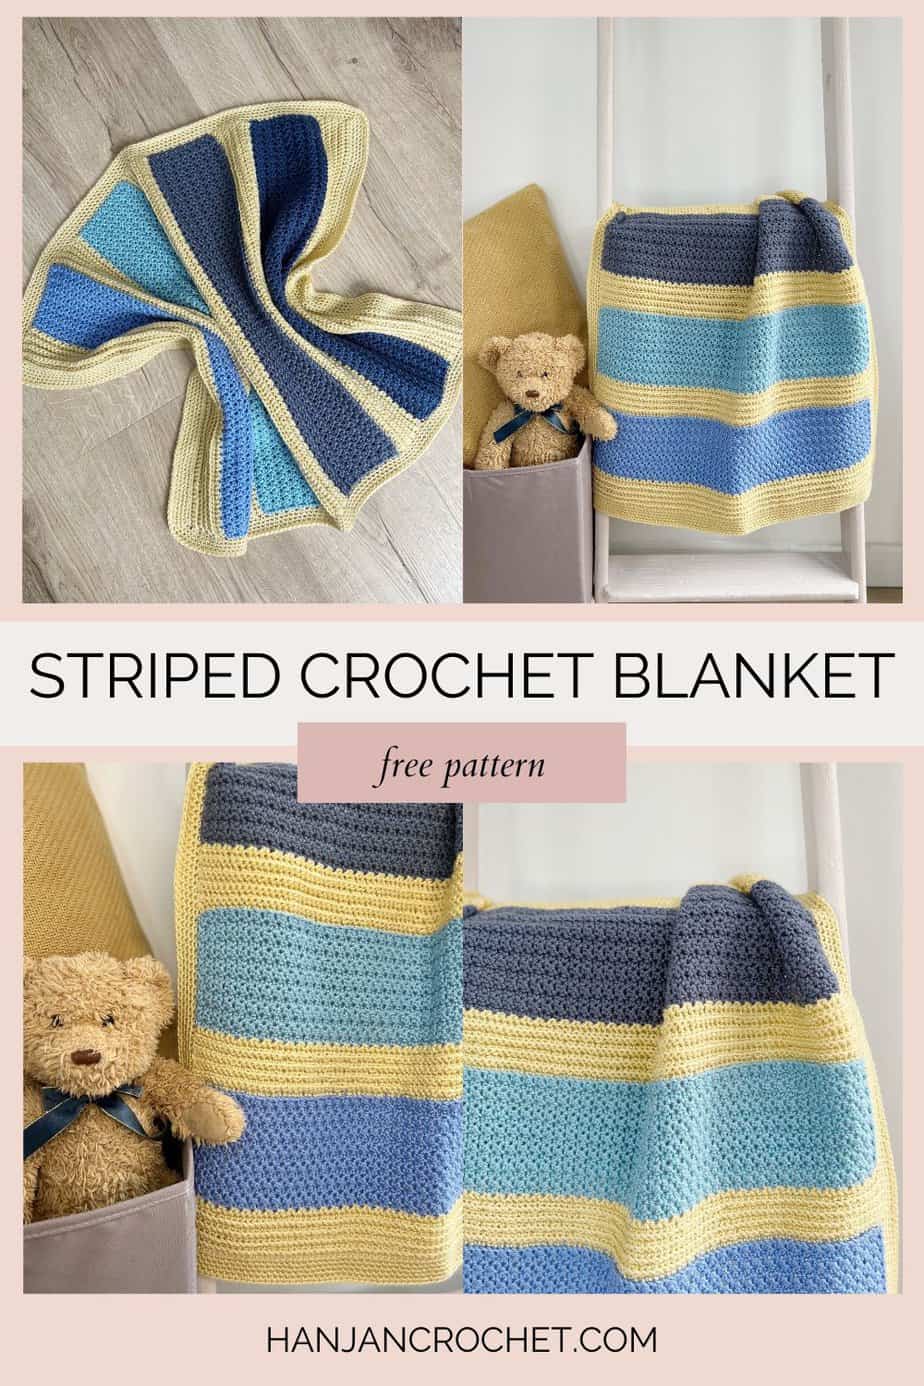 Four images of crochet blanket pattern for boys.